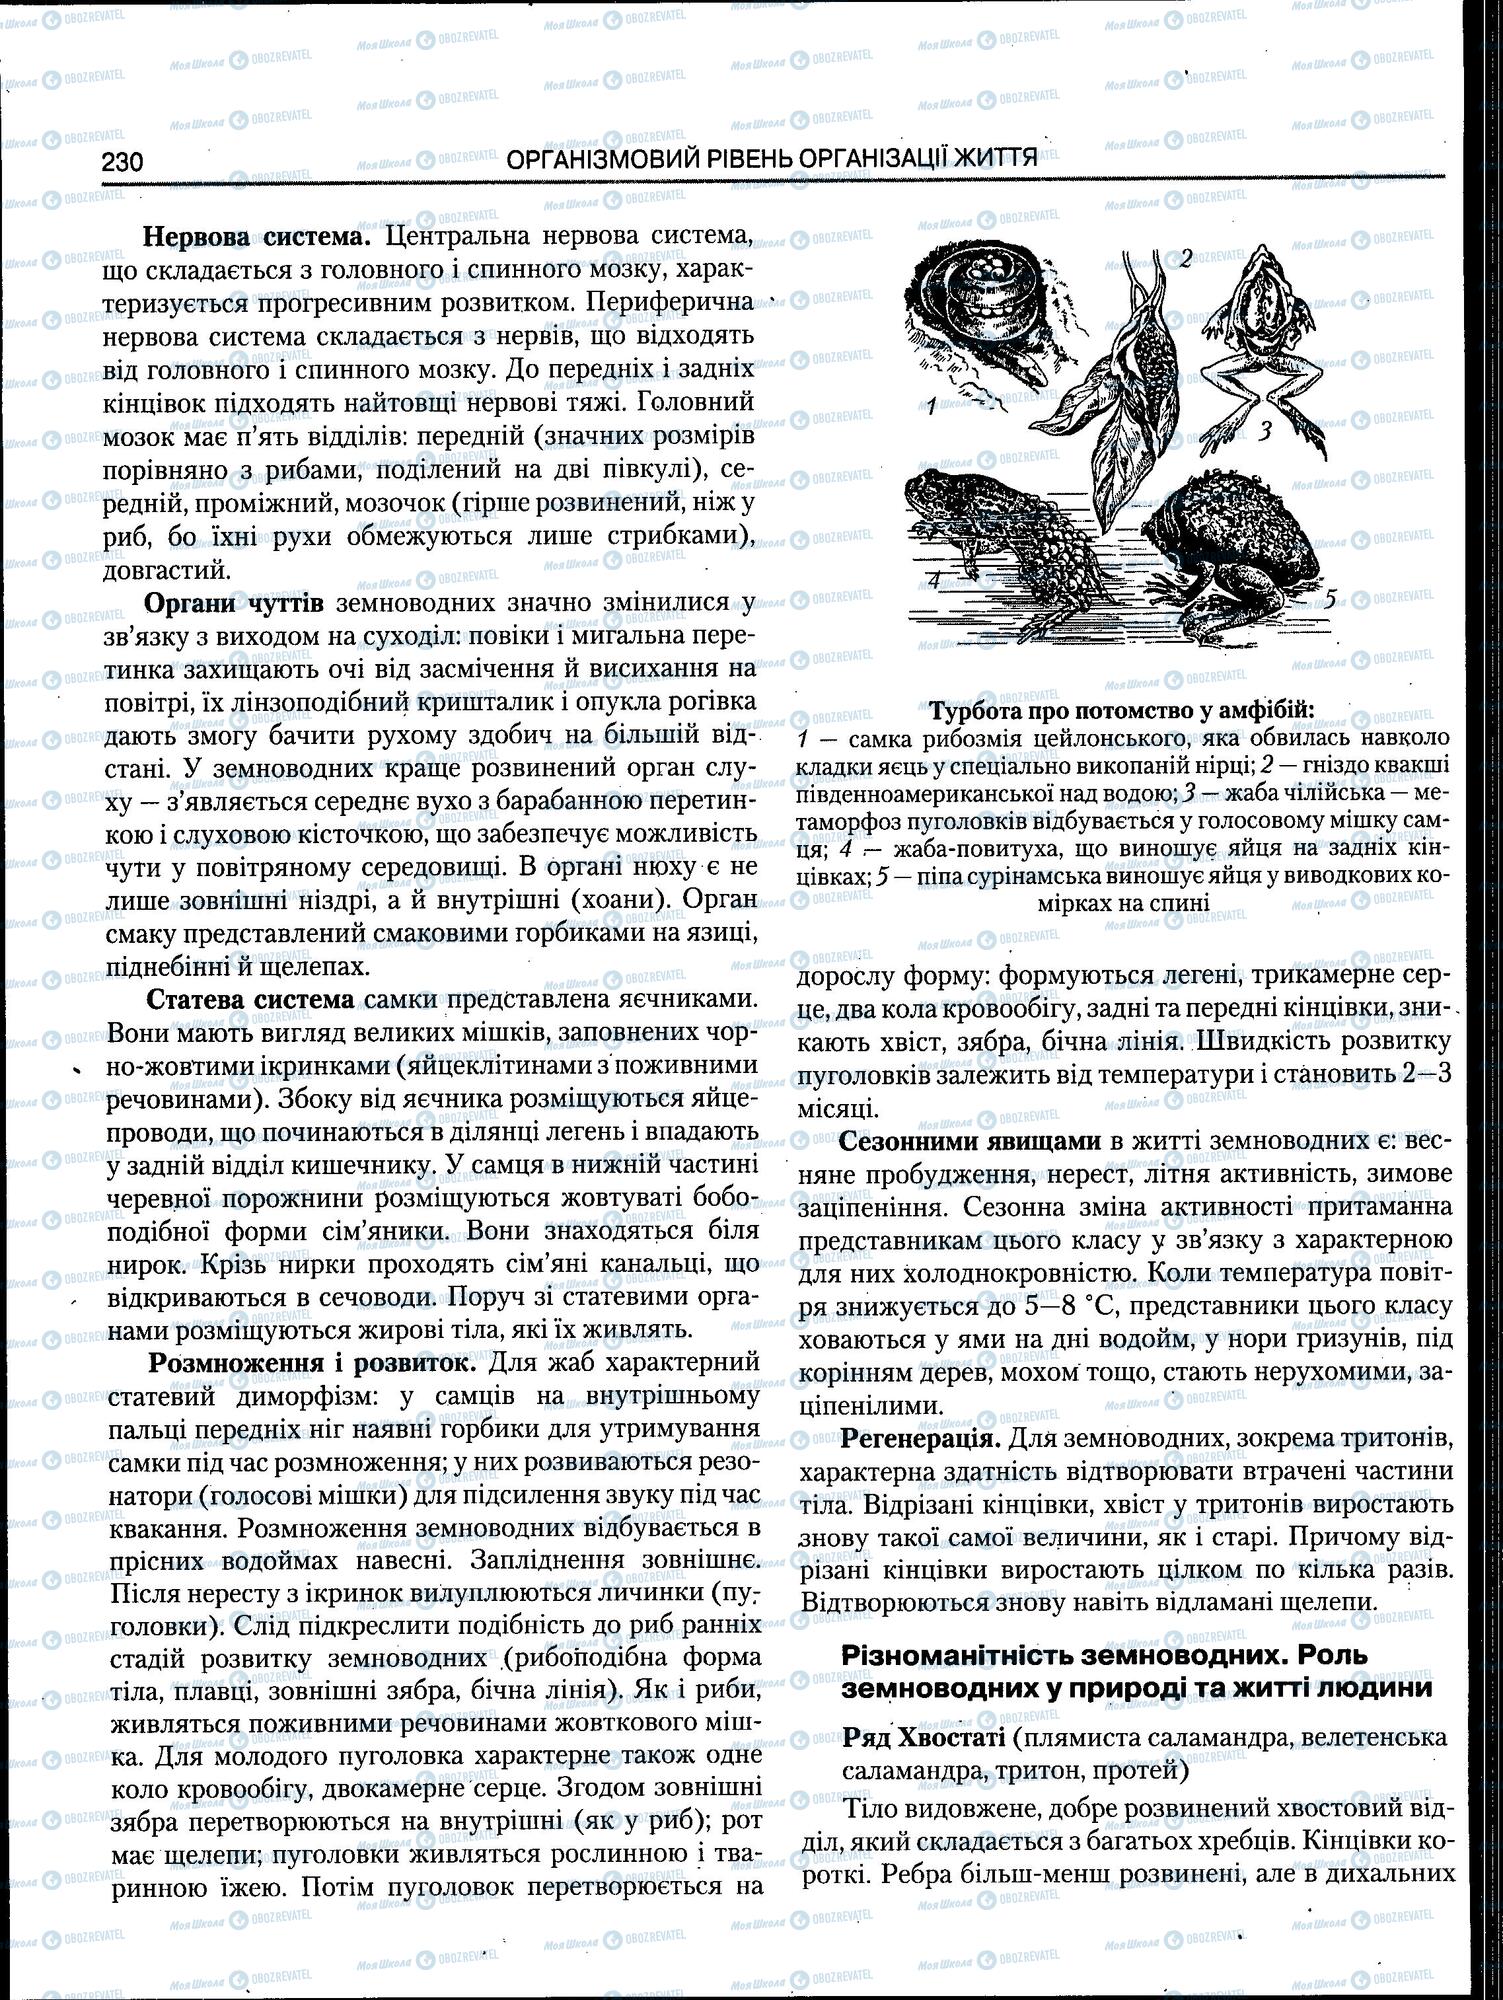 ЗНО Биология 11 класс страница 230